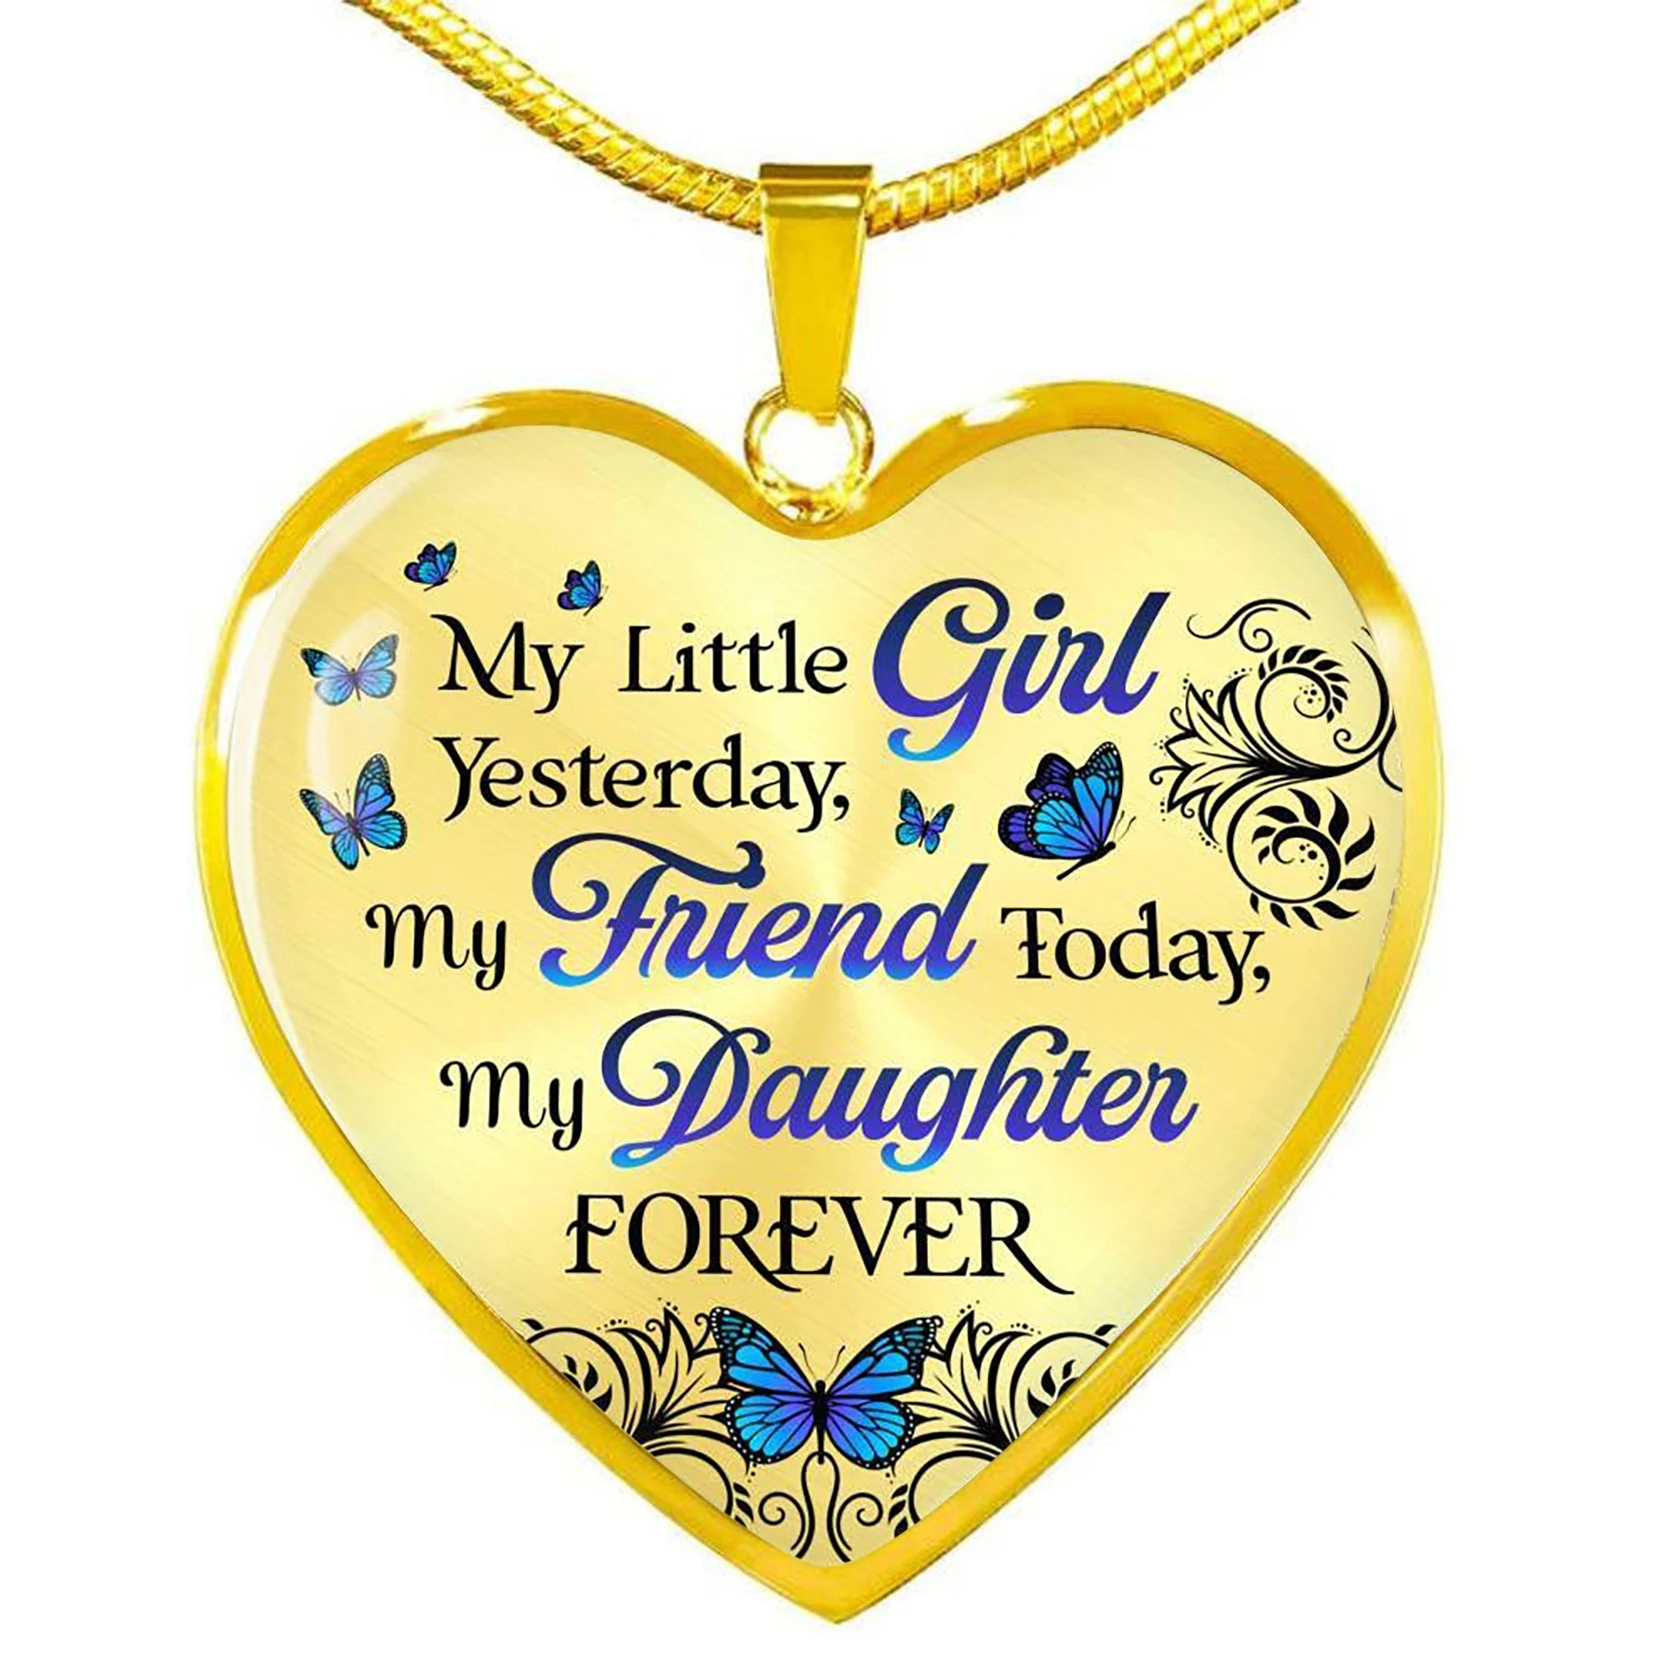 My daughter forever. Кулон дочке от папы. Медальон подвеска дочке от мамы. Слова на кулон для дочери от мамы.